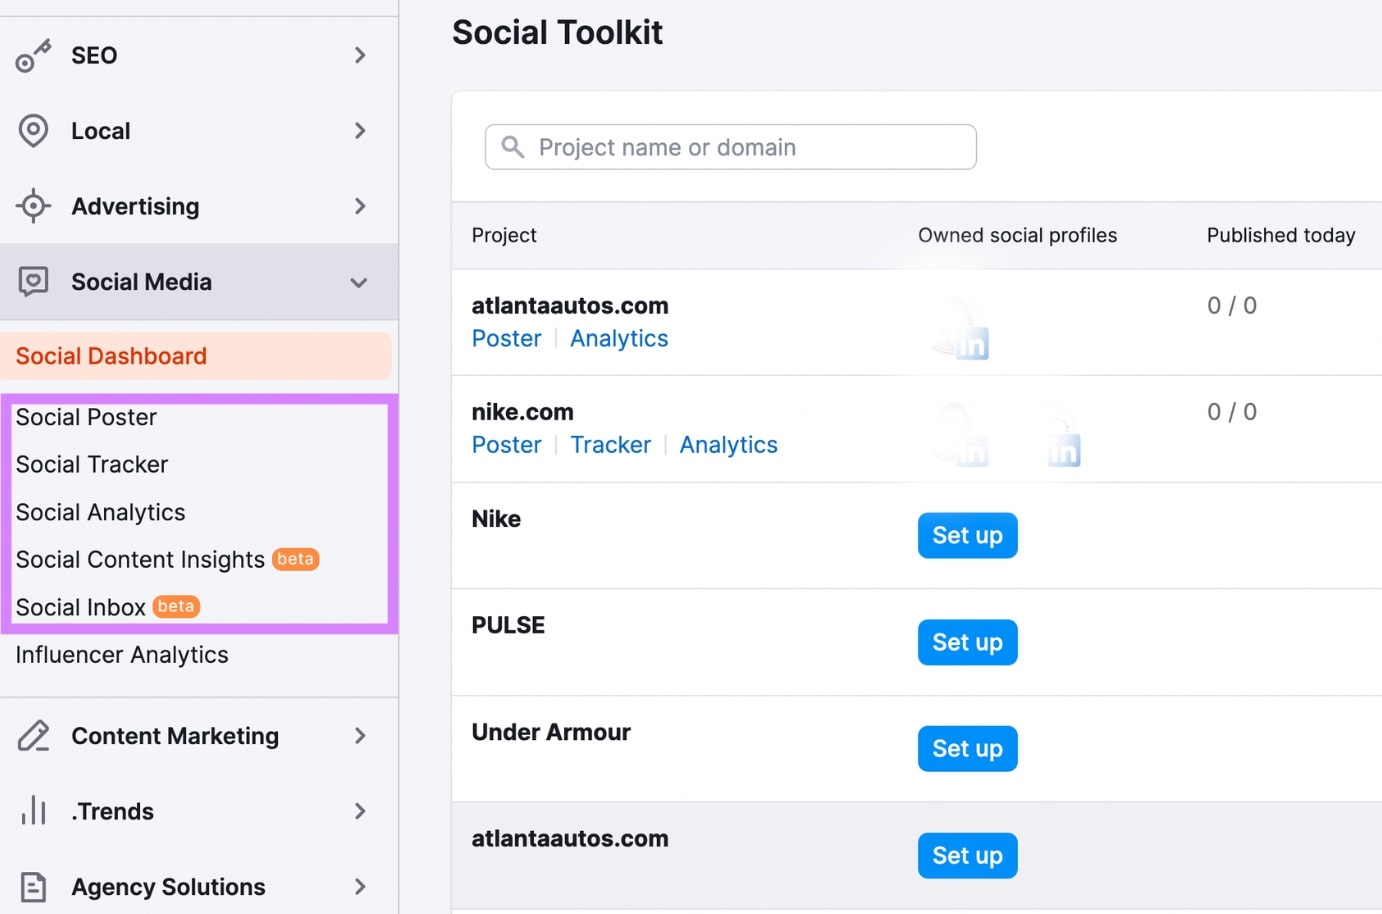 Semrush’s Social Media toolkit includes Social Poster, Social Tracker, Social Analytics, Social Content Insights, and Social Inbox tools